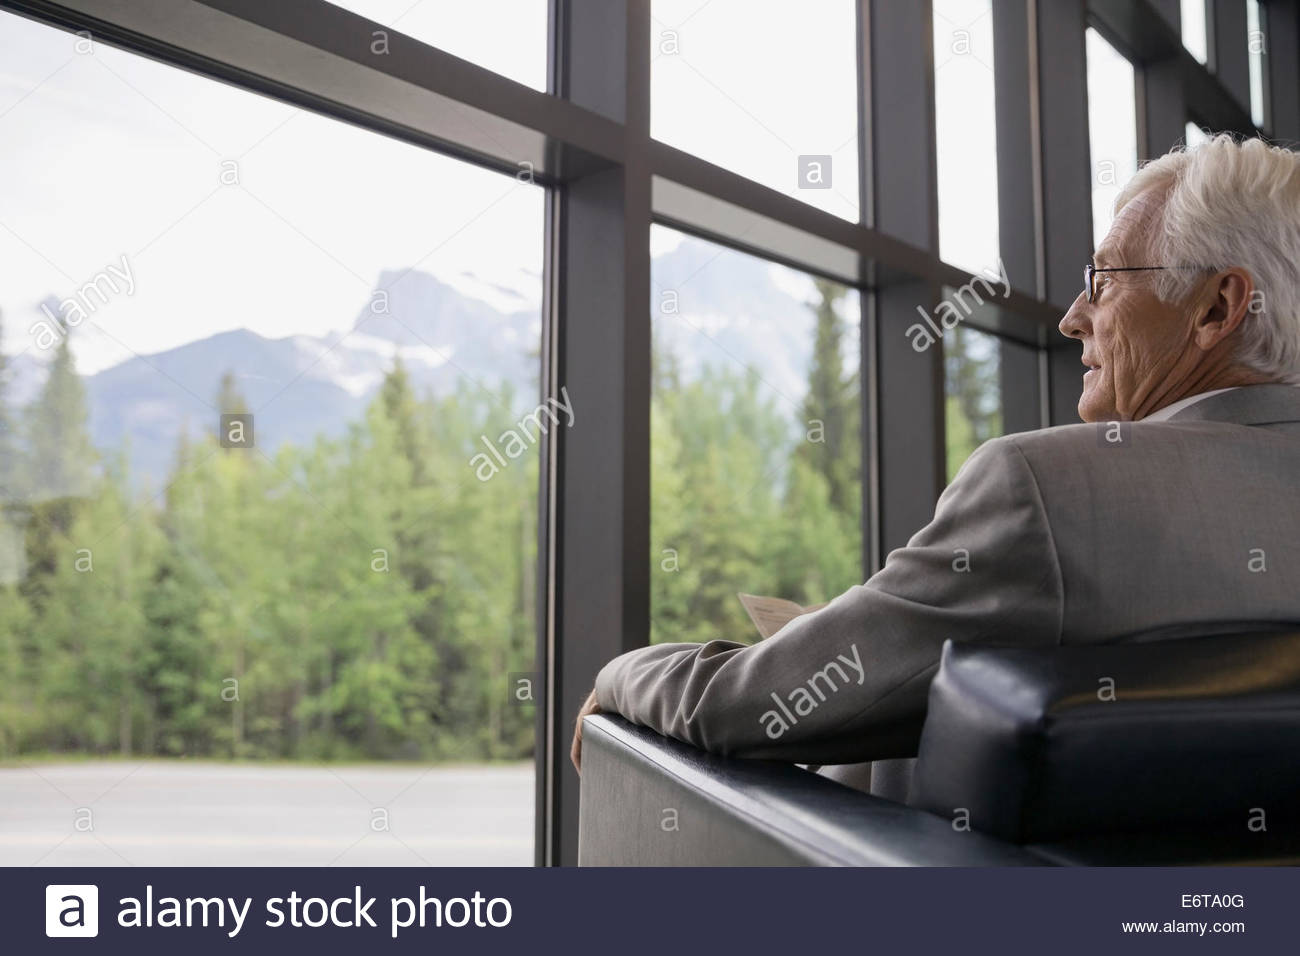 Businessman sitting near lobby window Stock Photo